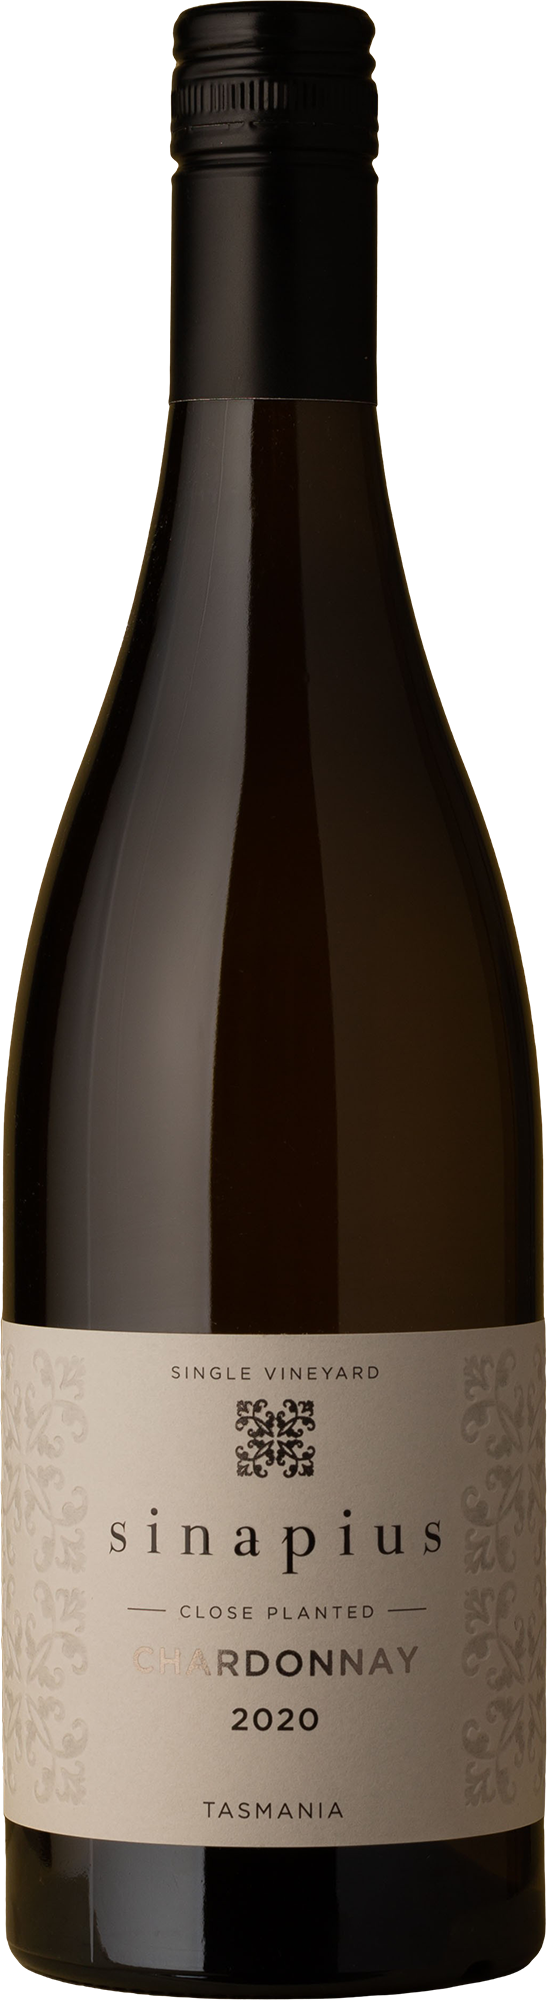 Sinapius - Close Planted Chardonnay 2020 White Wine